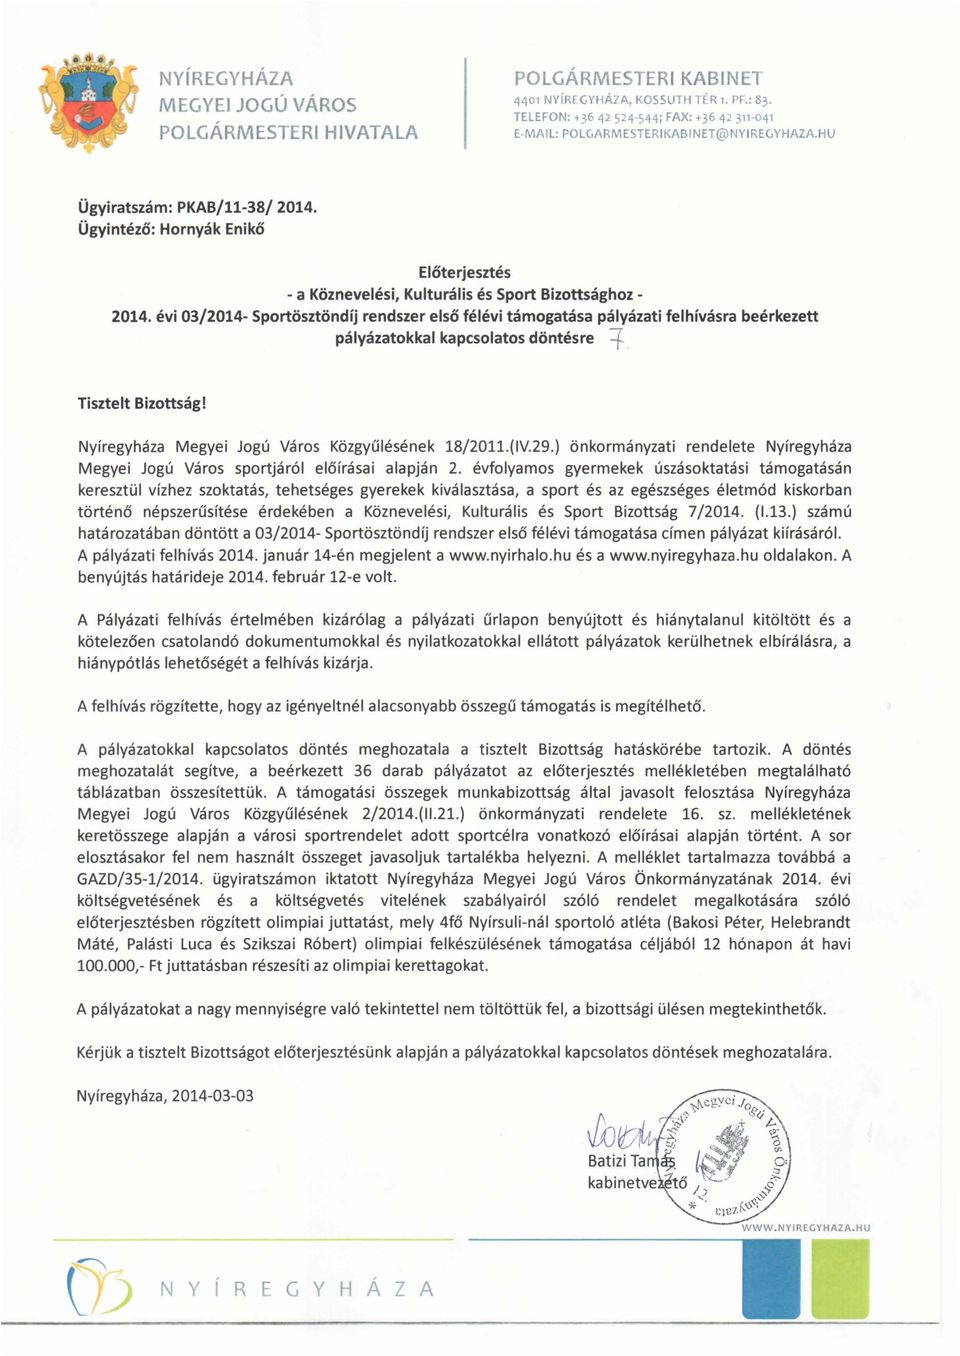 Ügyintéző: Hornyák Enikő Előterjesztés - a Köznevelési, Kulturális és Sport Bizottsághoz 2014.